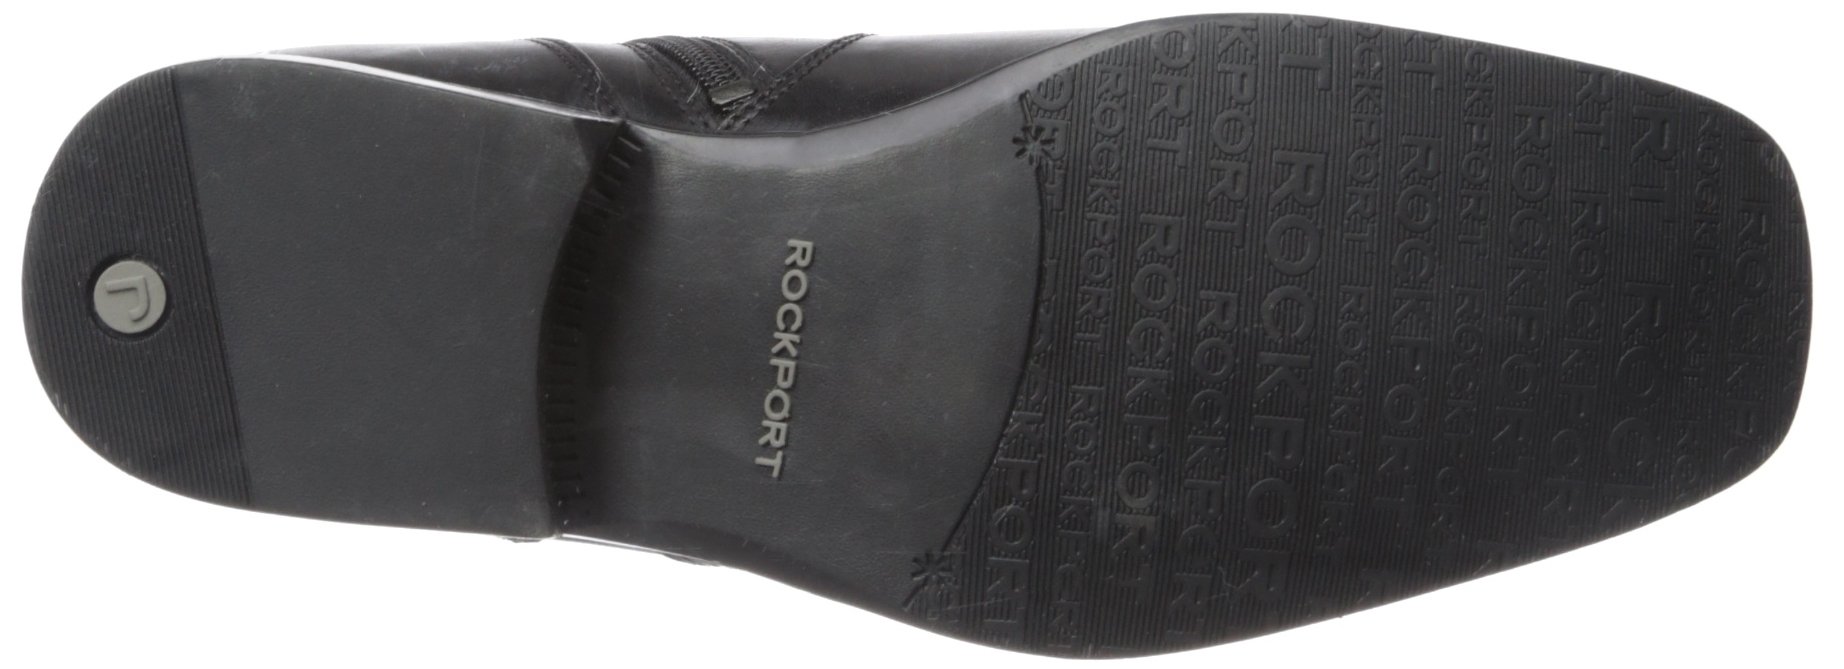 Rockport Men's Toloni Ankle Bootie, Black, 15 M US